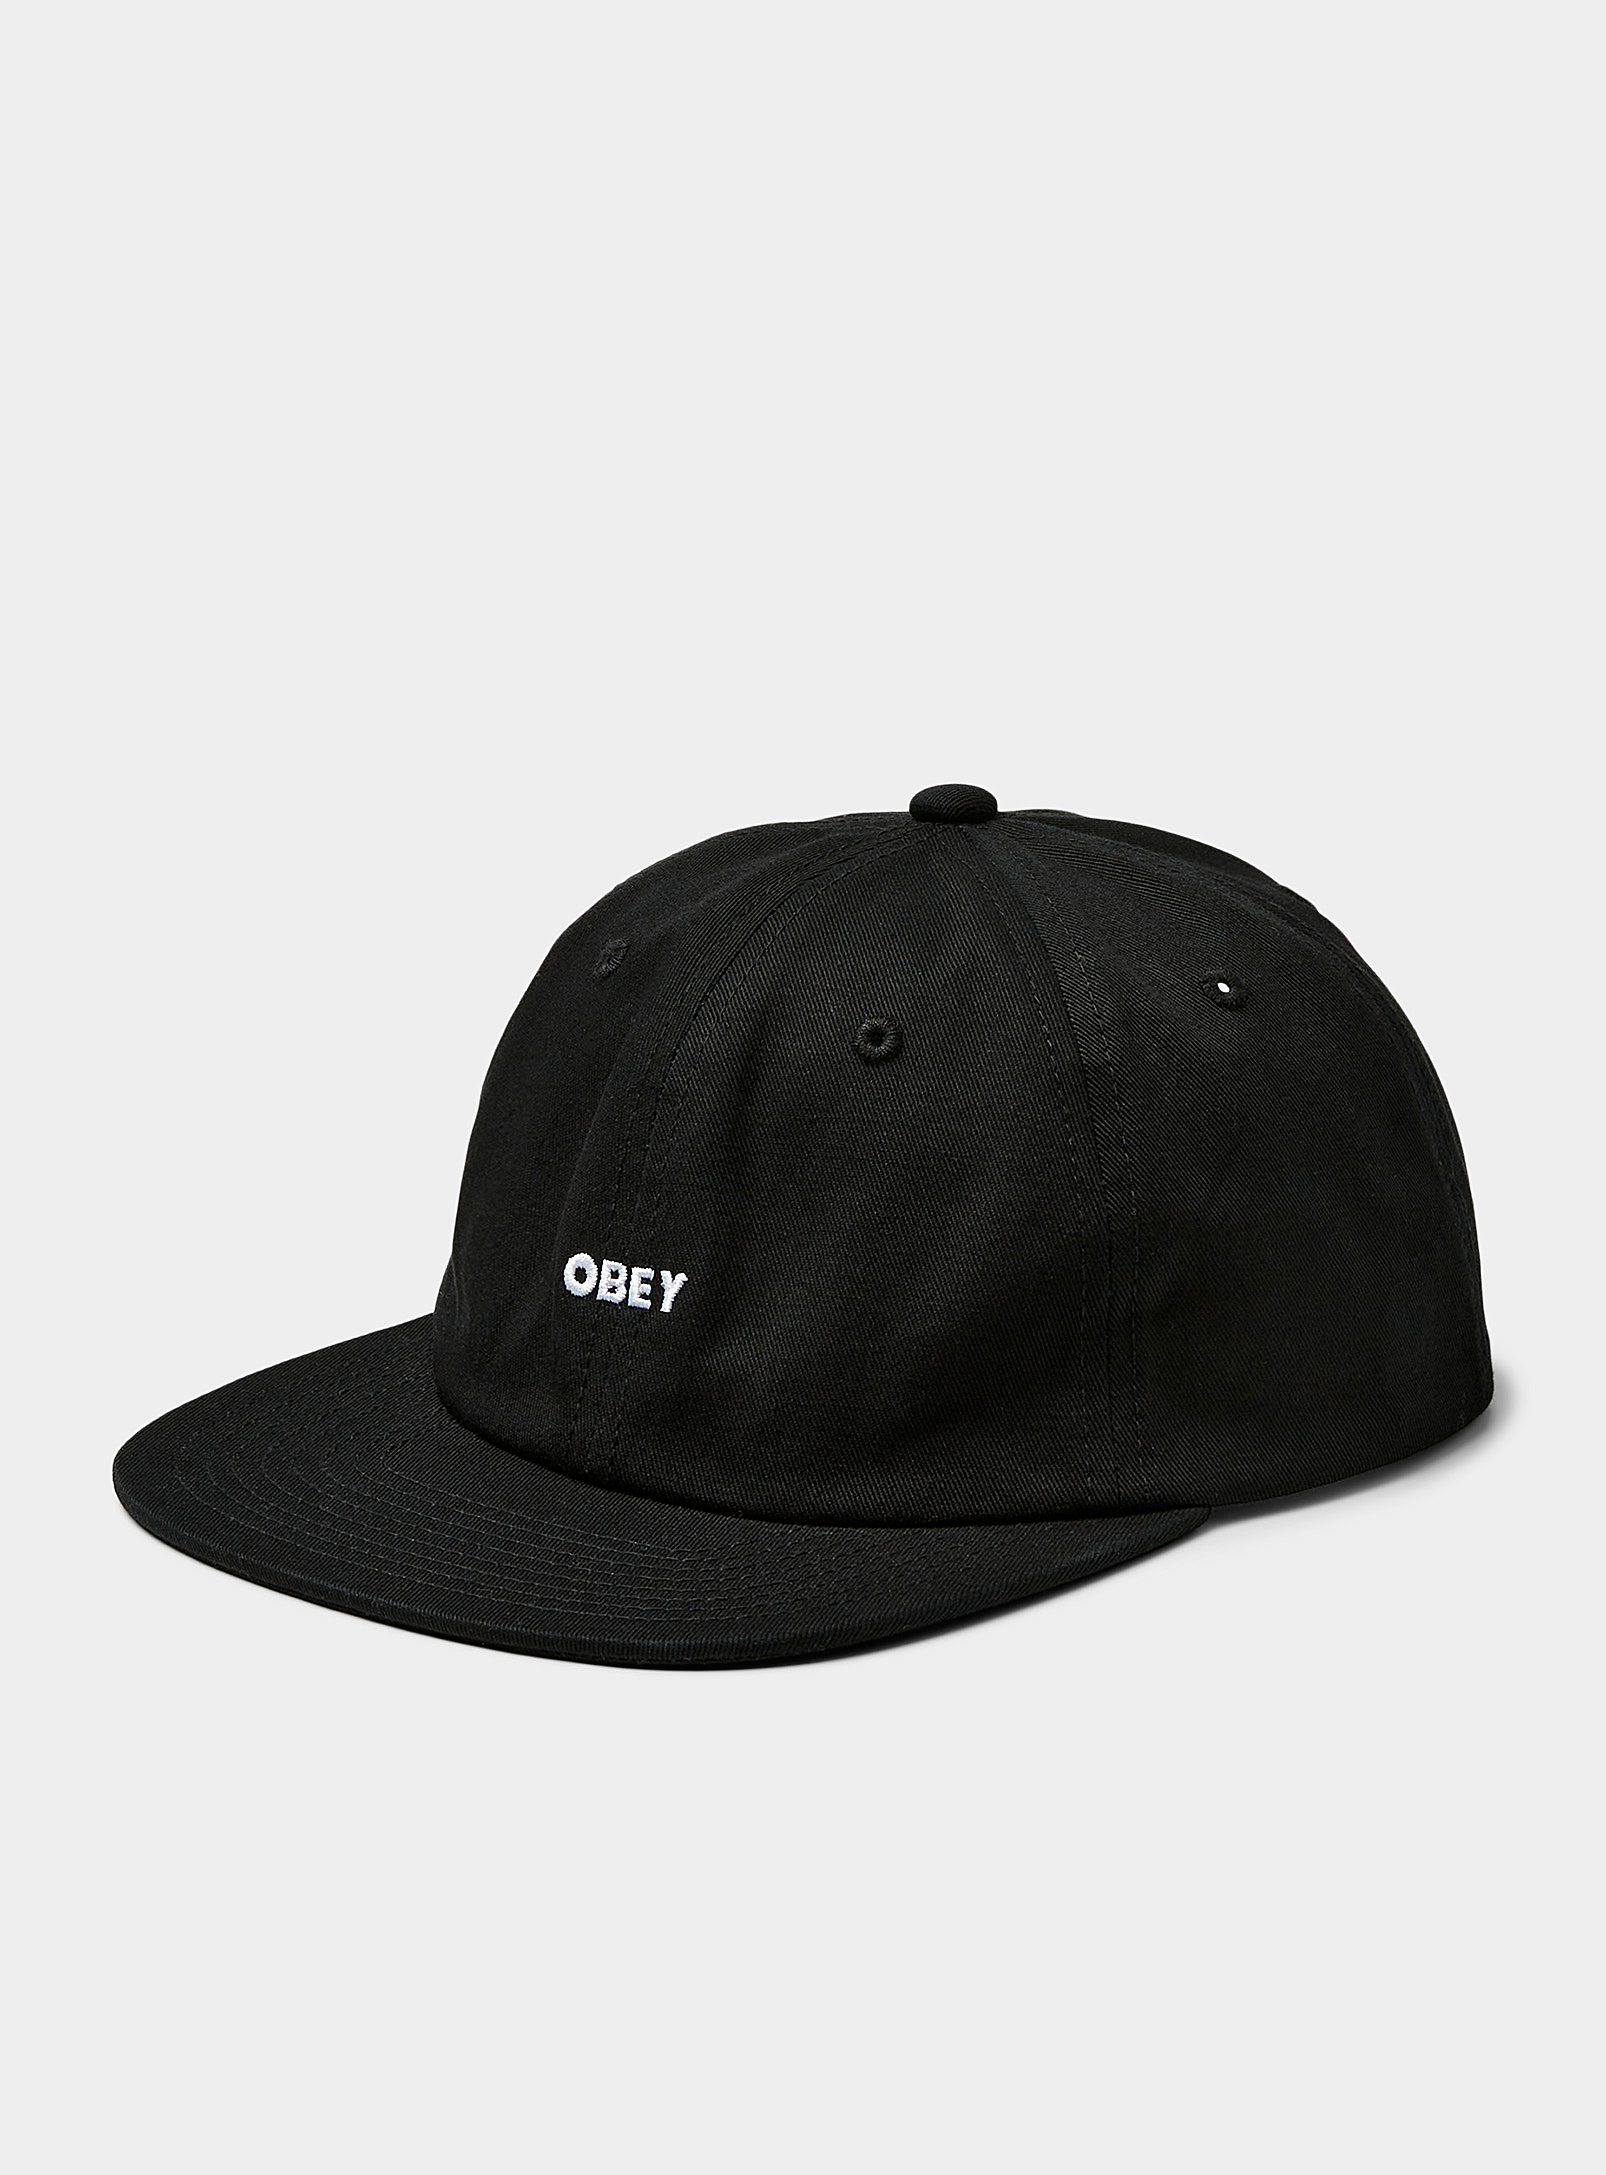 Obey - La casquette petit logo brodé